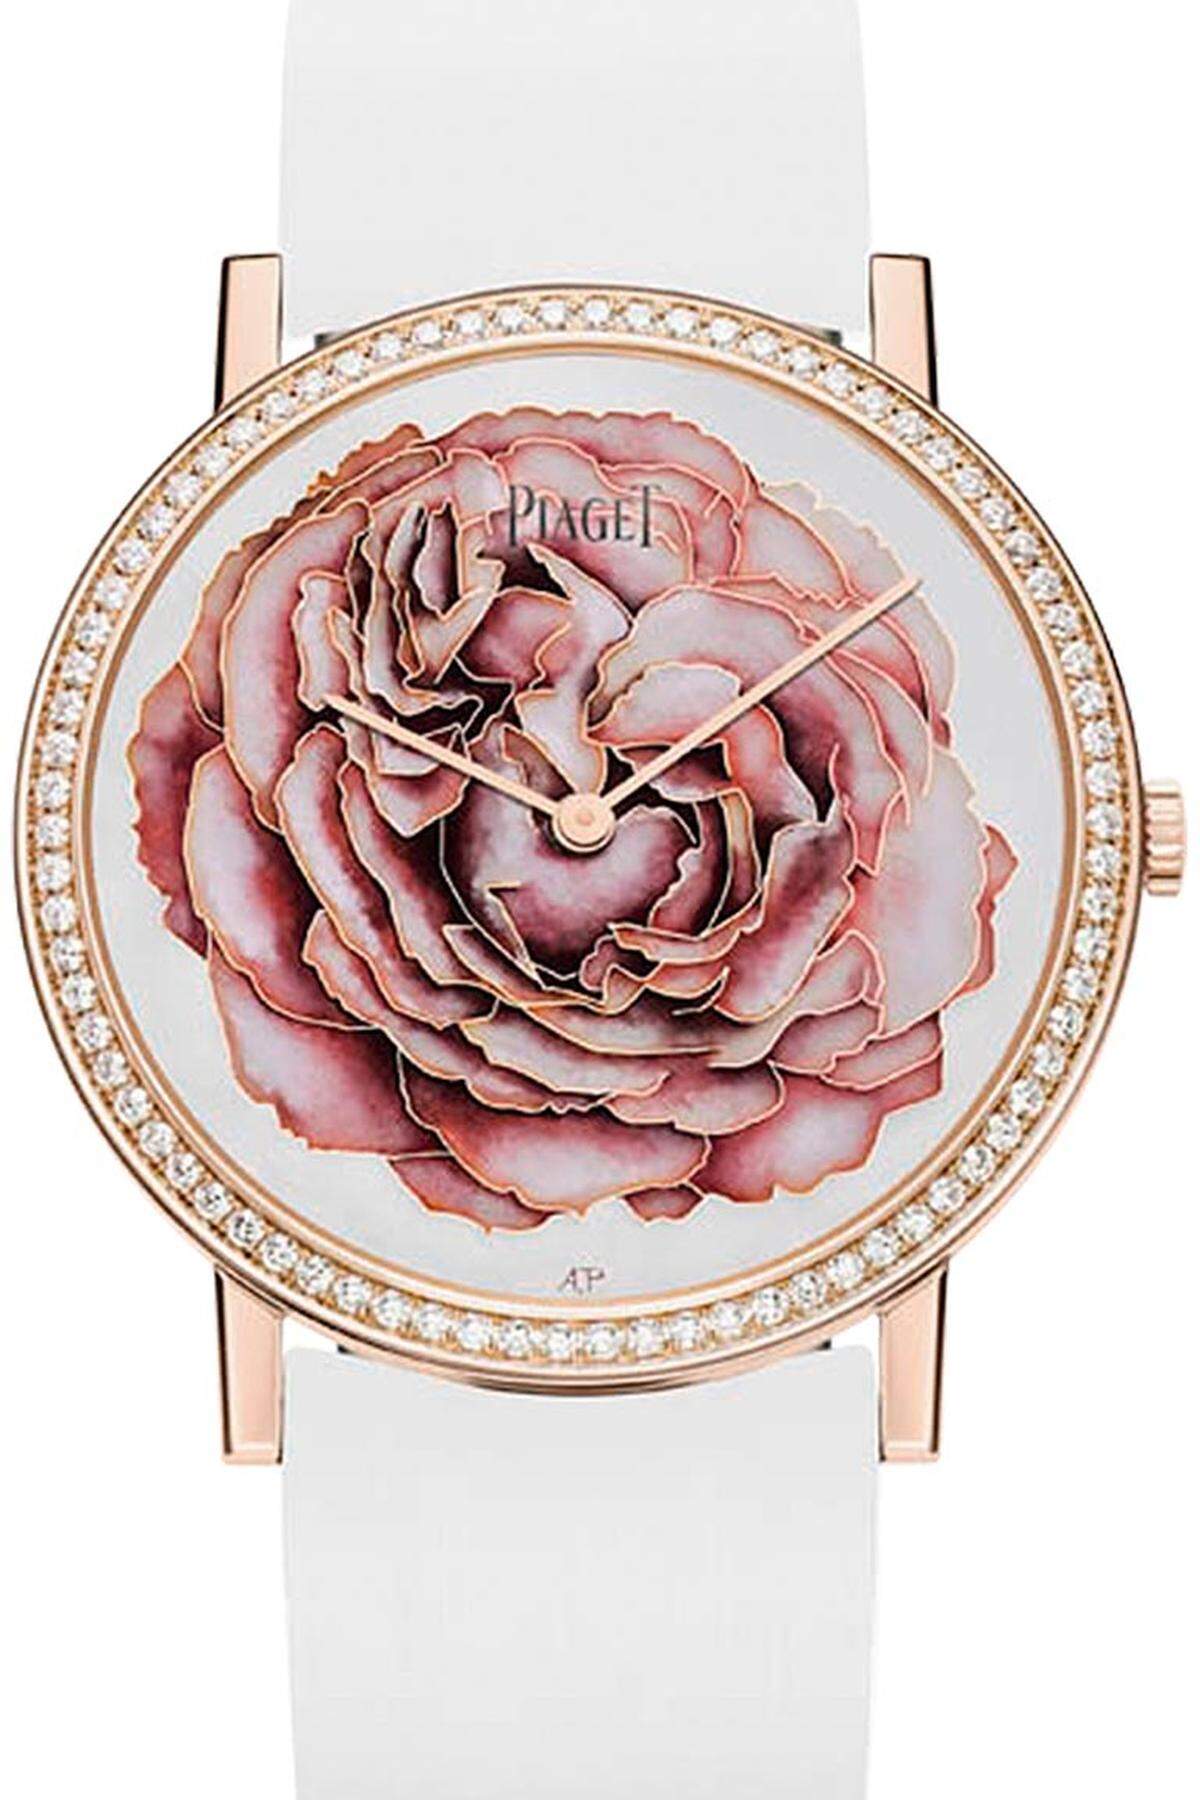 Kavaliere aufgepasst: Diese Rose verblüht nie. Seit den 1960er-Jahren sind Rosen bei Piaget ein wiederkehrendes dekoratives Motiv für Uhren und Schmuck.